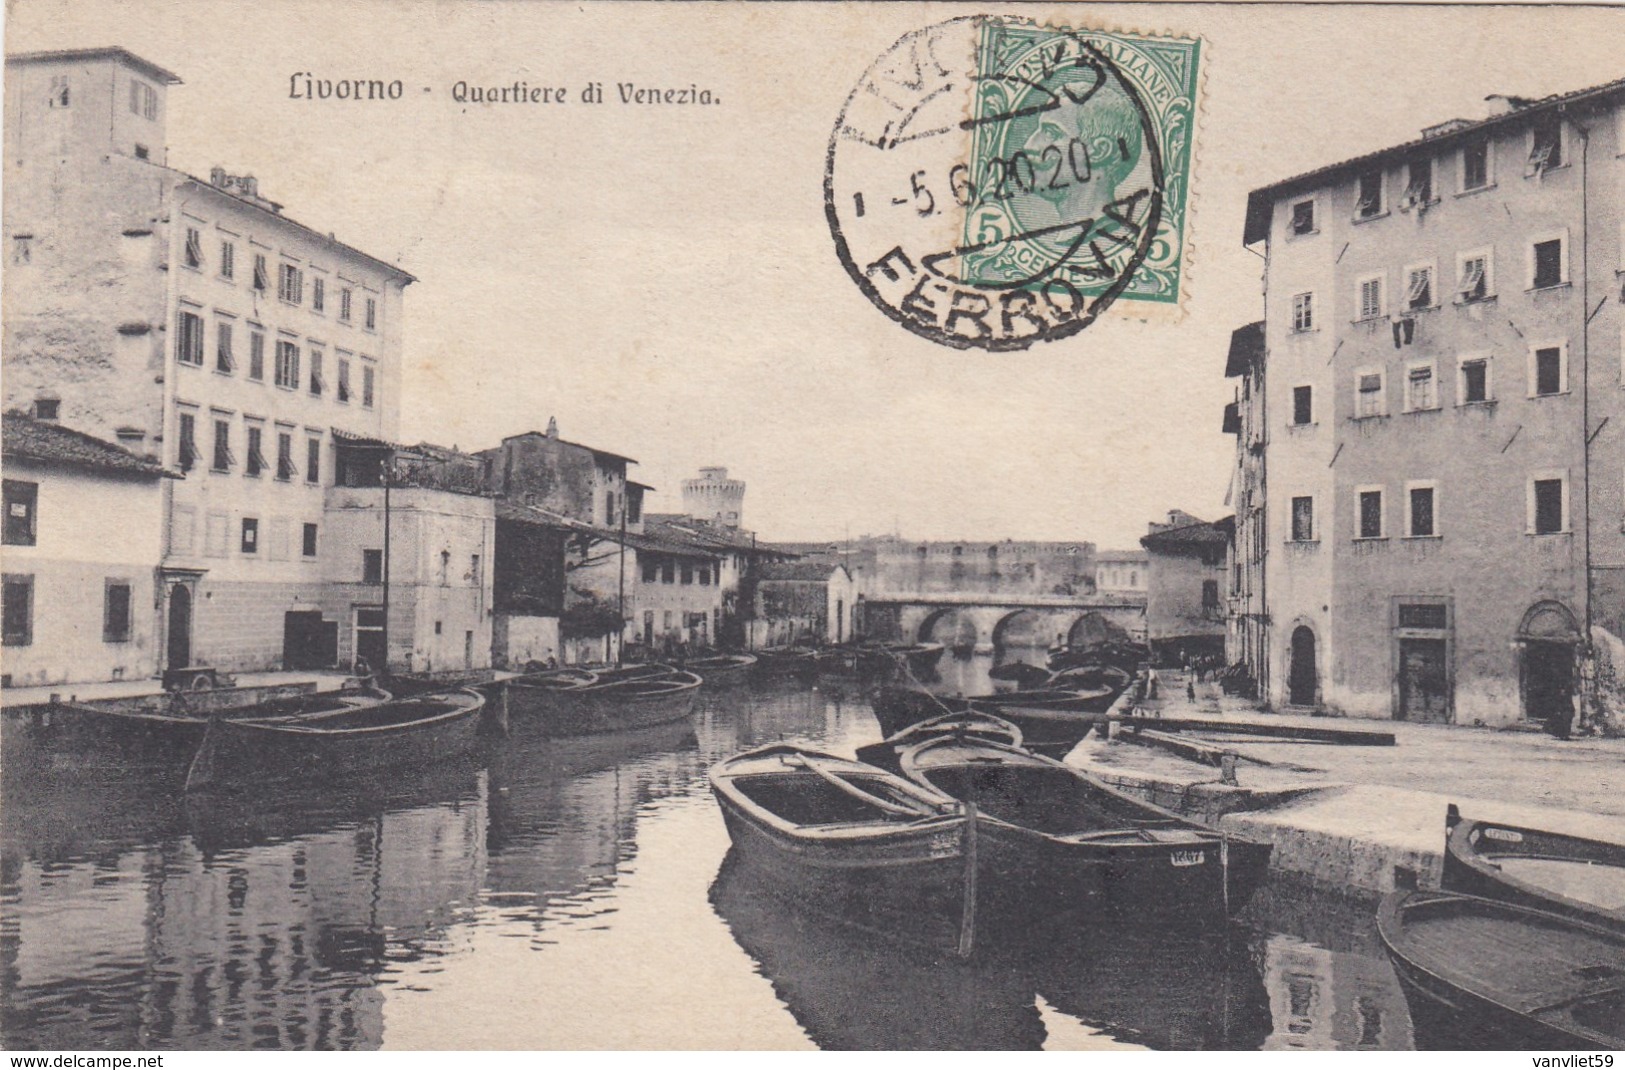 LIVORNO-QUARTIERE DI VENEZIA-CARTOLINA VIAGGIATA IL 5-6-1920 - Livorno